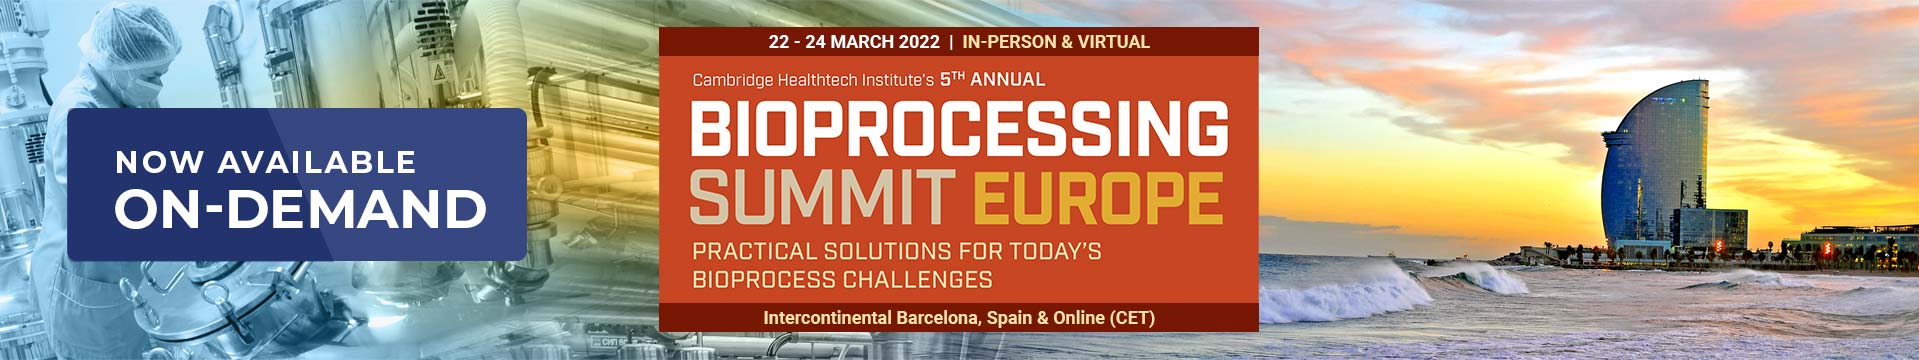 Bioprocessing Summit Europe Virtual Banner Image